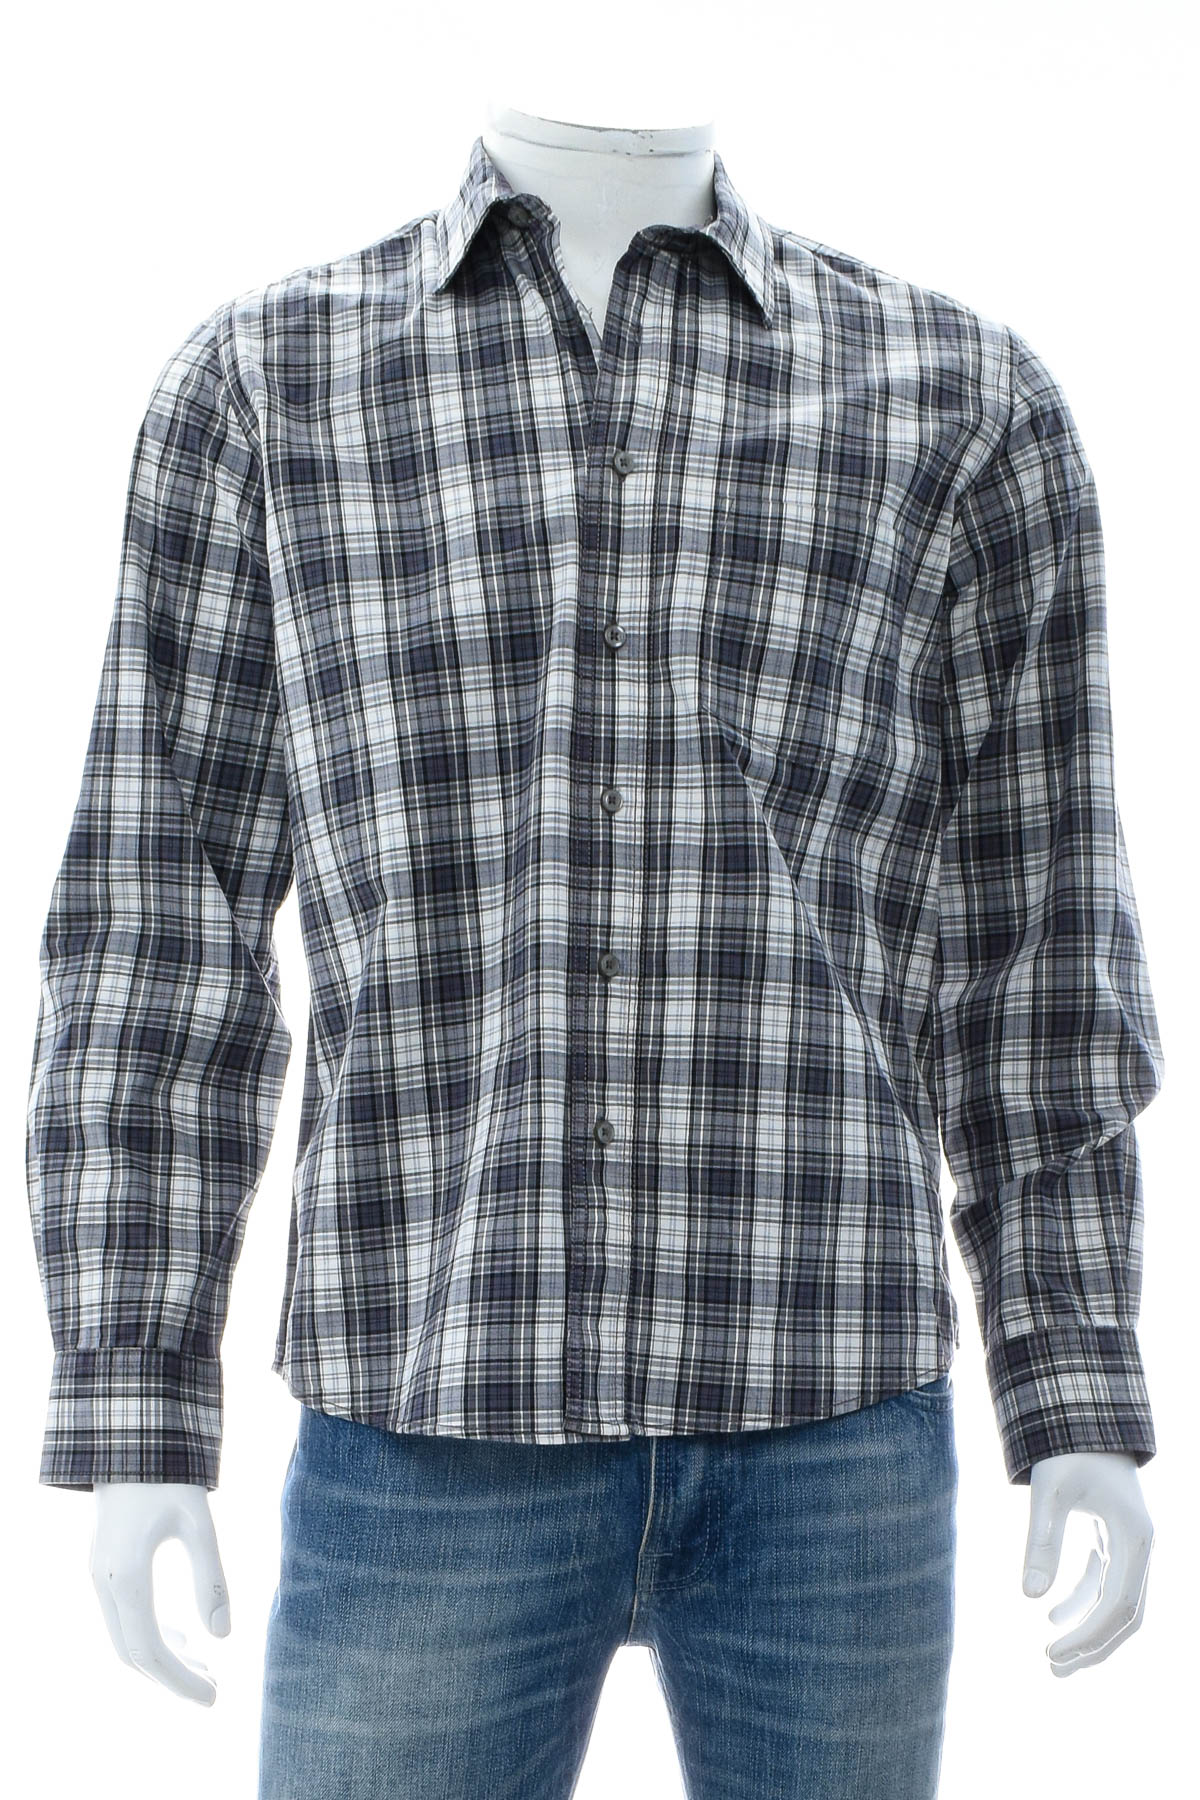 Ανδρικό πουκάμισο - Watsons - 0